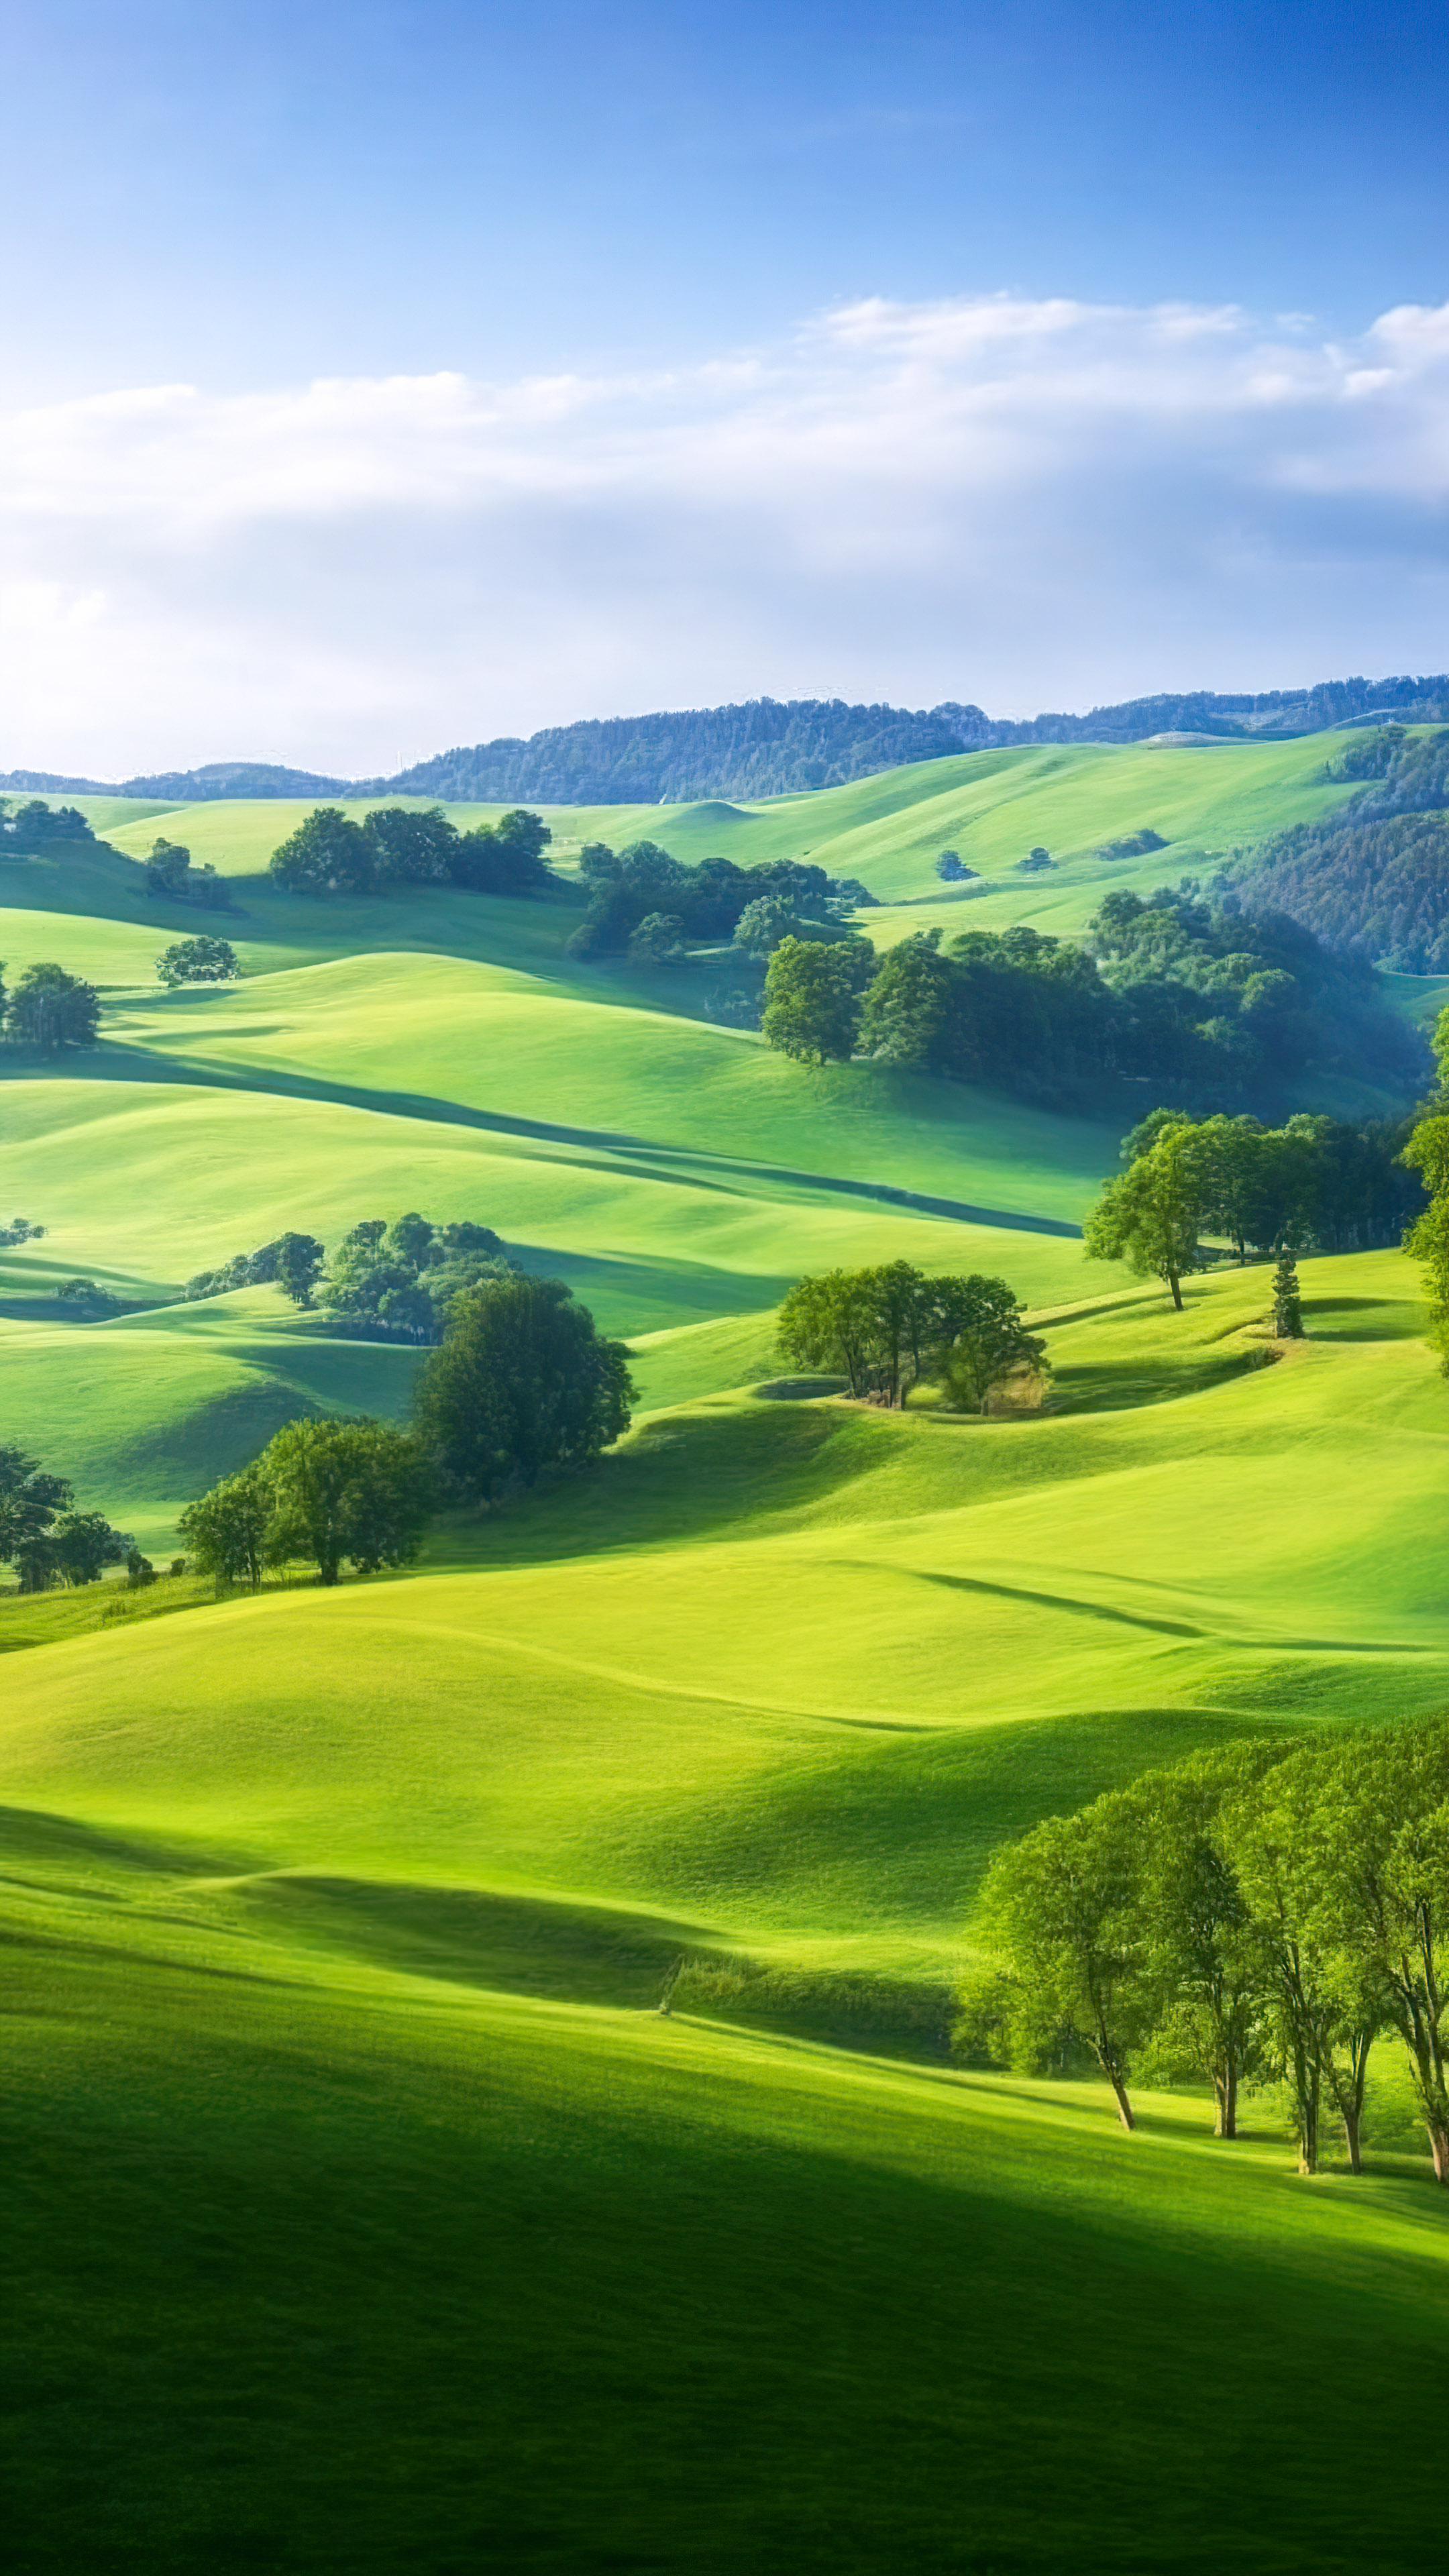 Appréciez la tranquillité de notre fond d'écran de paysage en HD, illustrant une scène paisible de la campagne avec des collines ondulantes, des pâturages verdoyants et un ciel clair de jour.